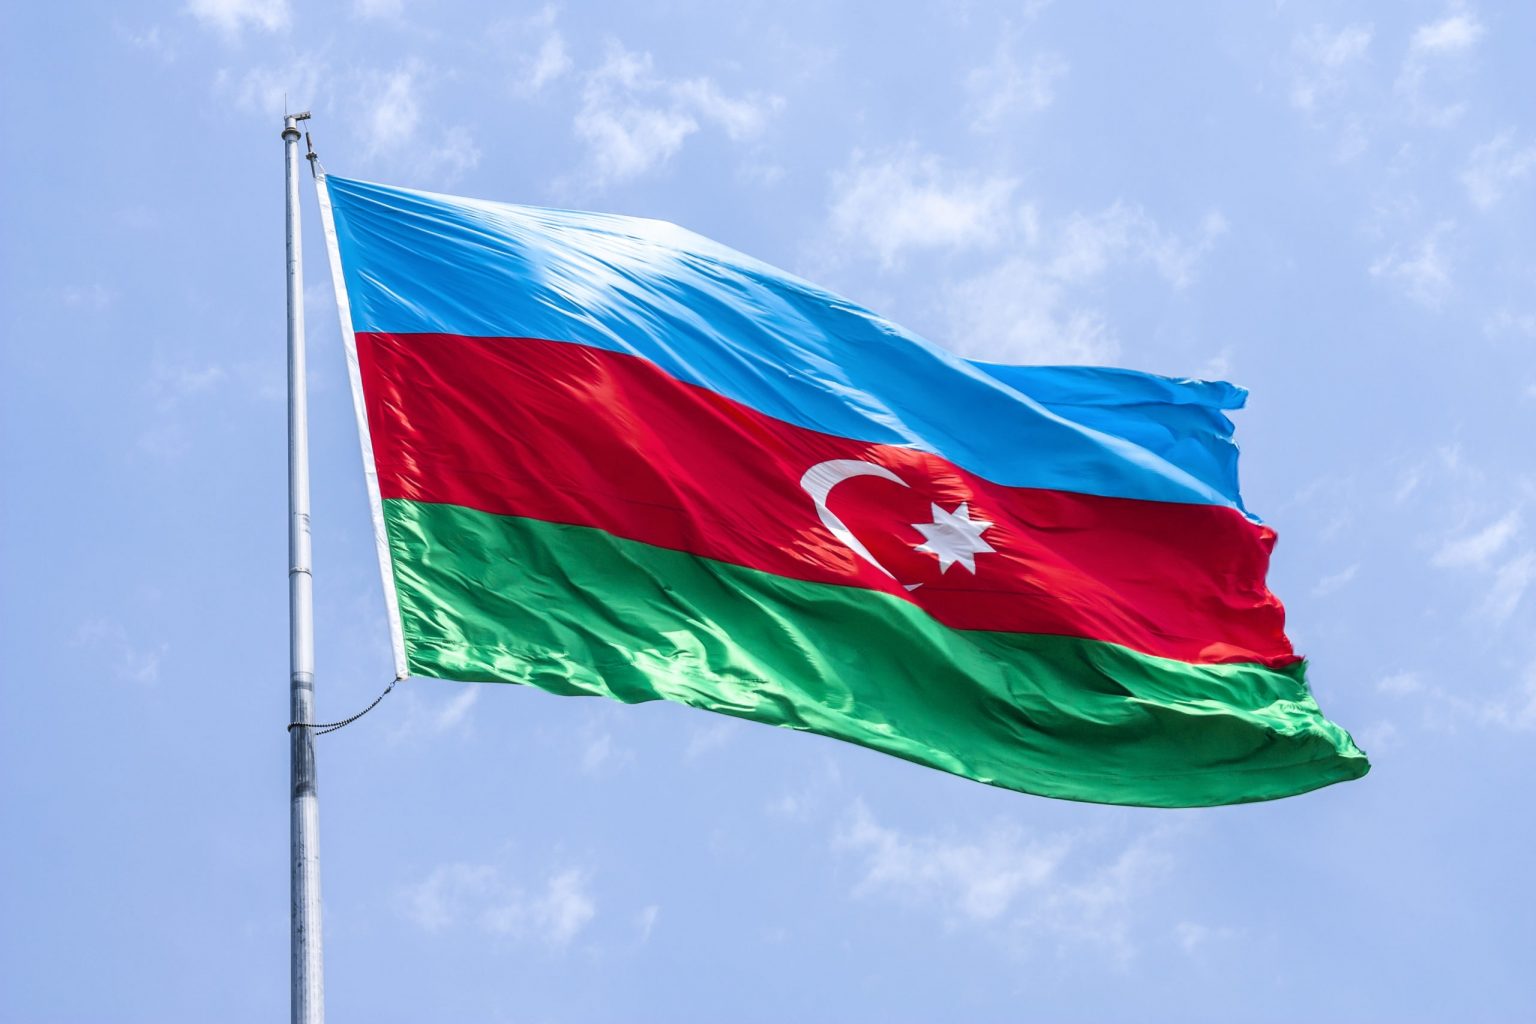 Ադրբեջանը՝ կրոնական ազատությունների վերաբերյալ ԱՄՆ պետքարտուղարության հատուկ դիտարկման երկրների ցուցակում